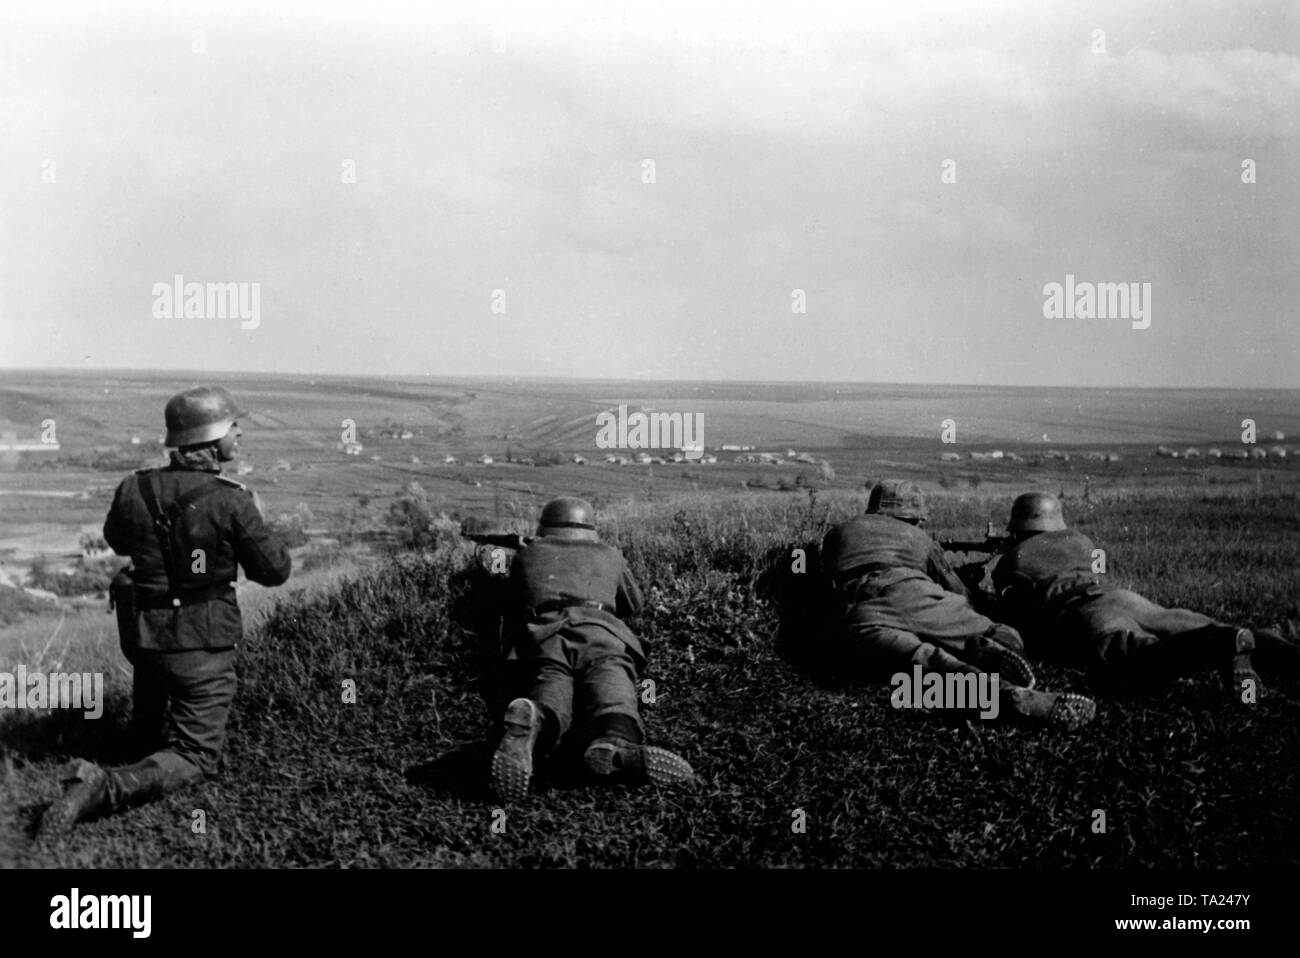 L'infanterie allemande se trouvent en position de fusils et mitrailleuses MG 34 au cours d'une bataille au Donets. Correspondant de guerre : Haehle Banque D'Images